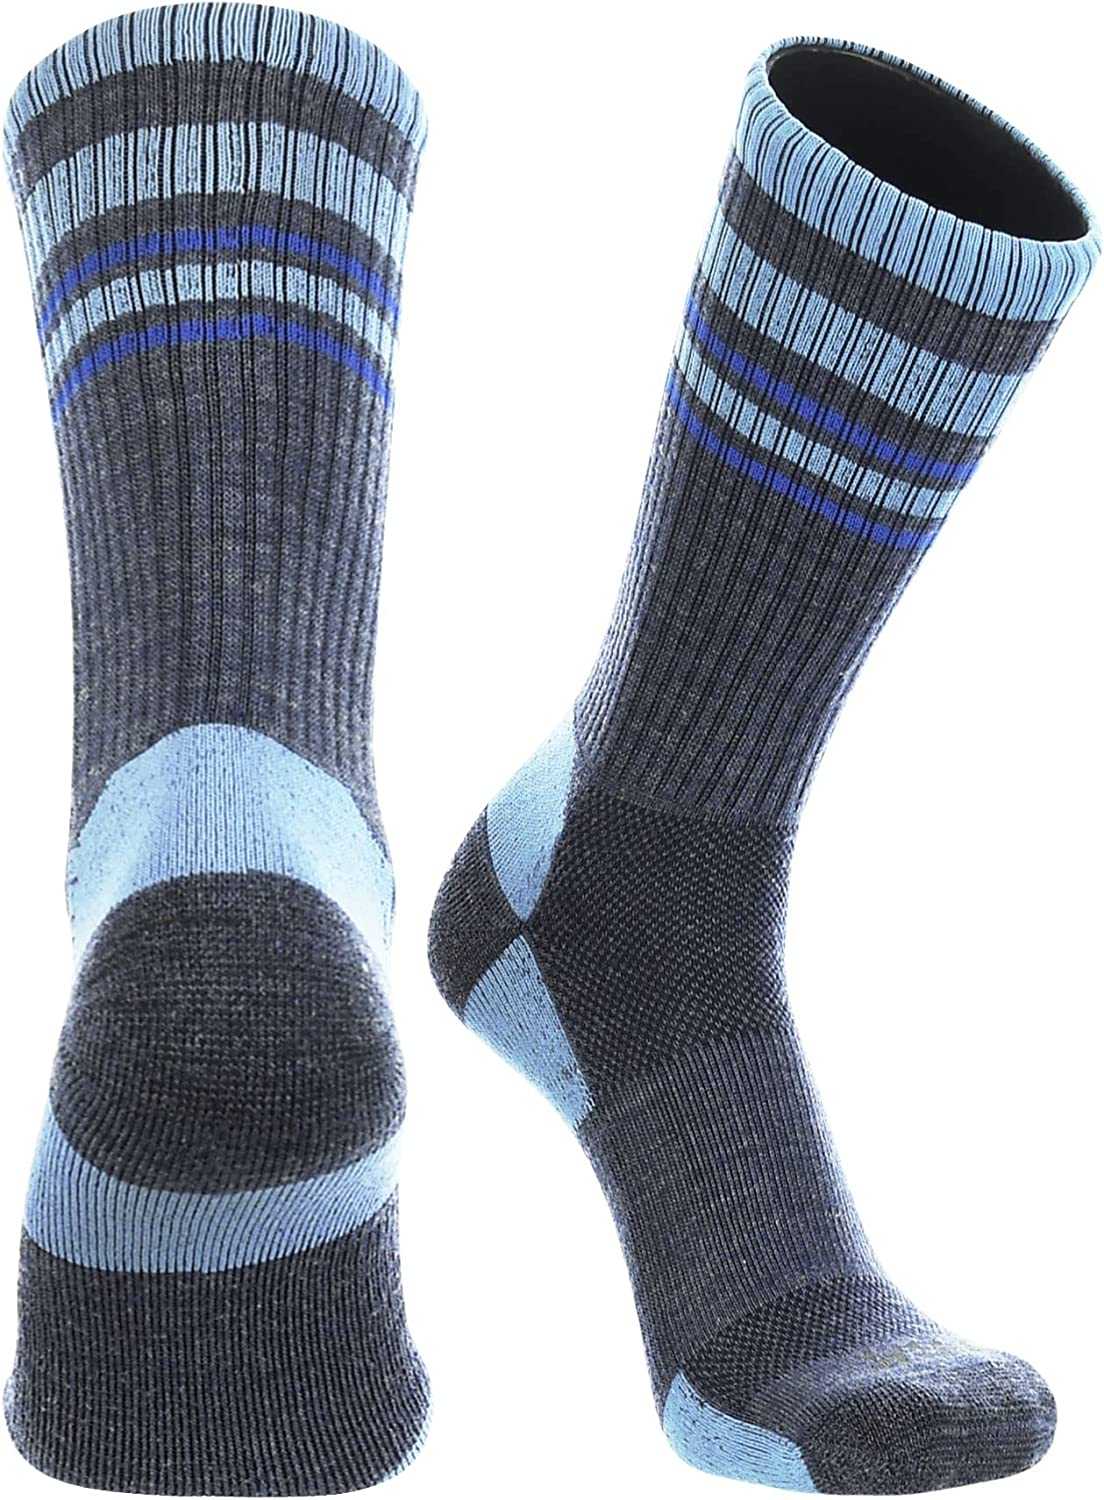 TCK Merino Wool Crew Socks - Navy Columbia Blue AF Blue Stripe